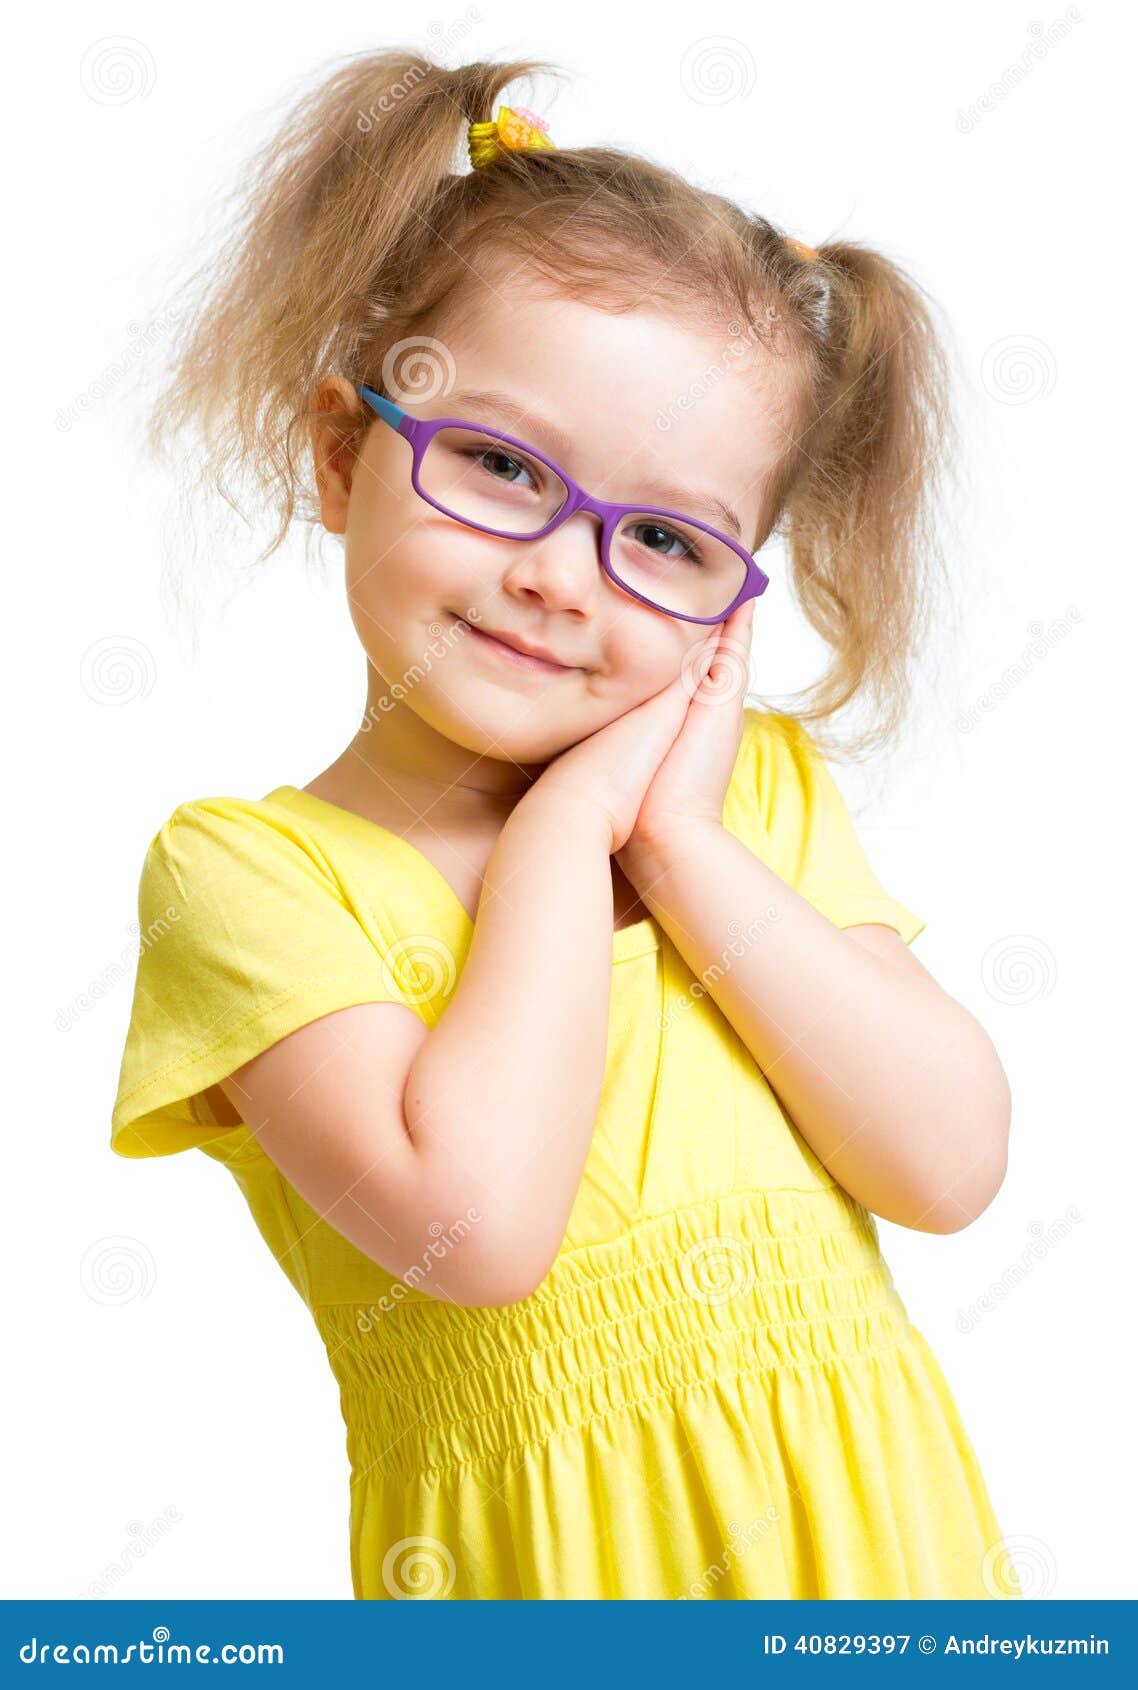 adorbale child in glasses 